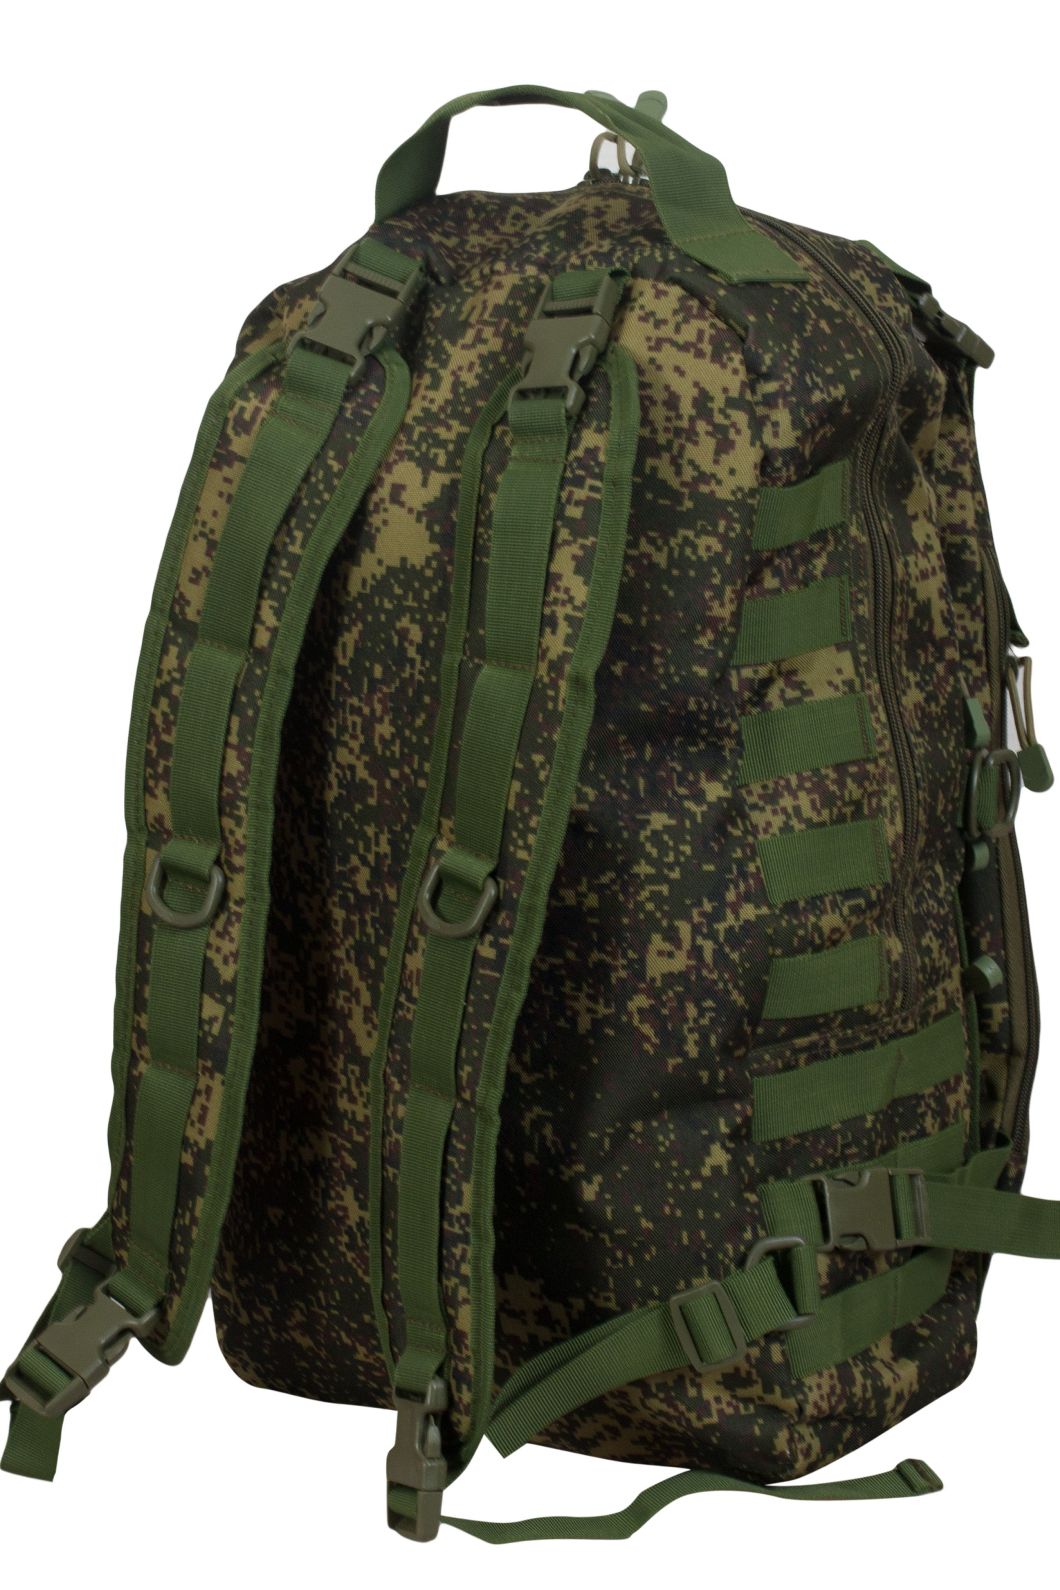 Купить тактический армейский рюкзак с нашивкой ПС оптом или в розницу